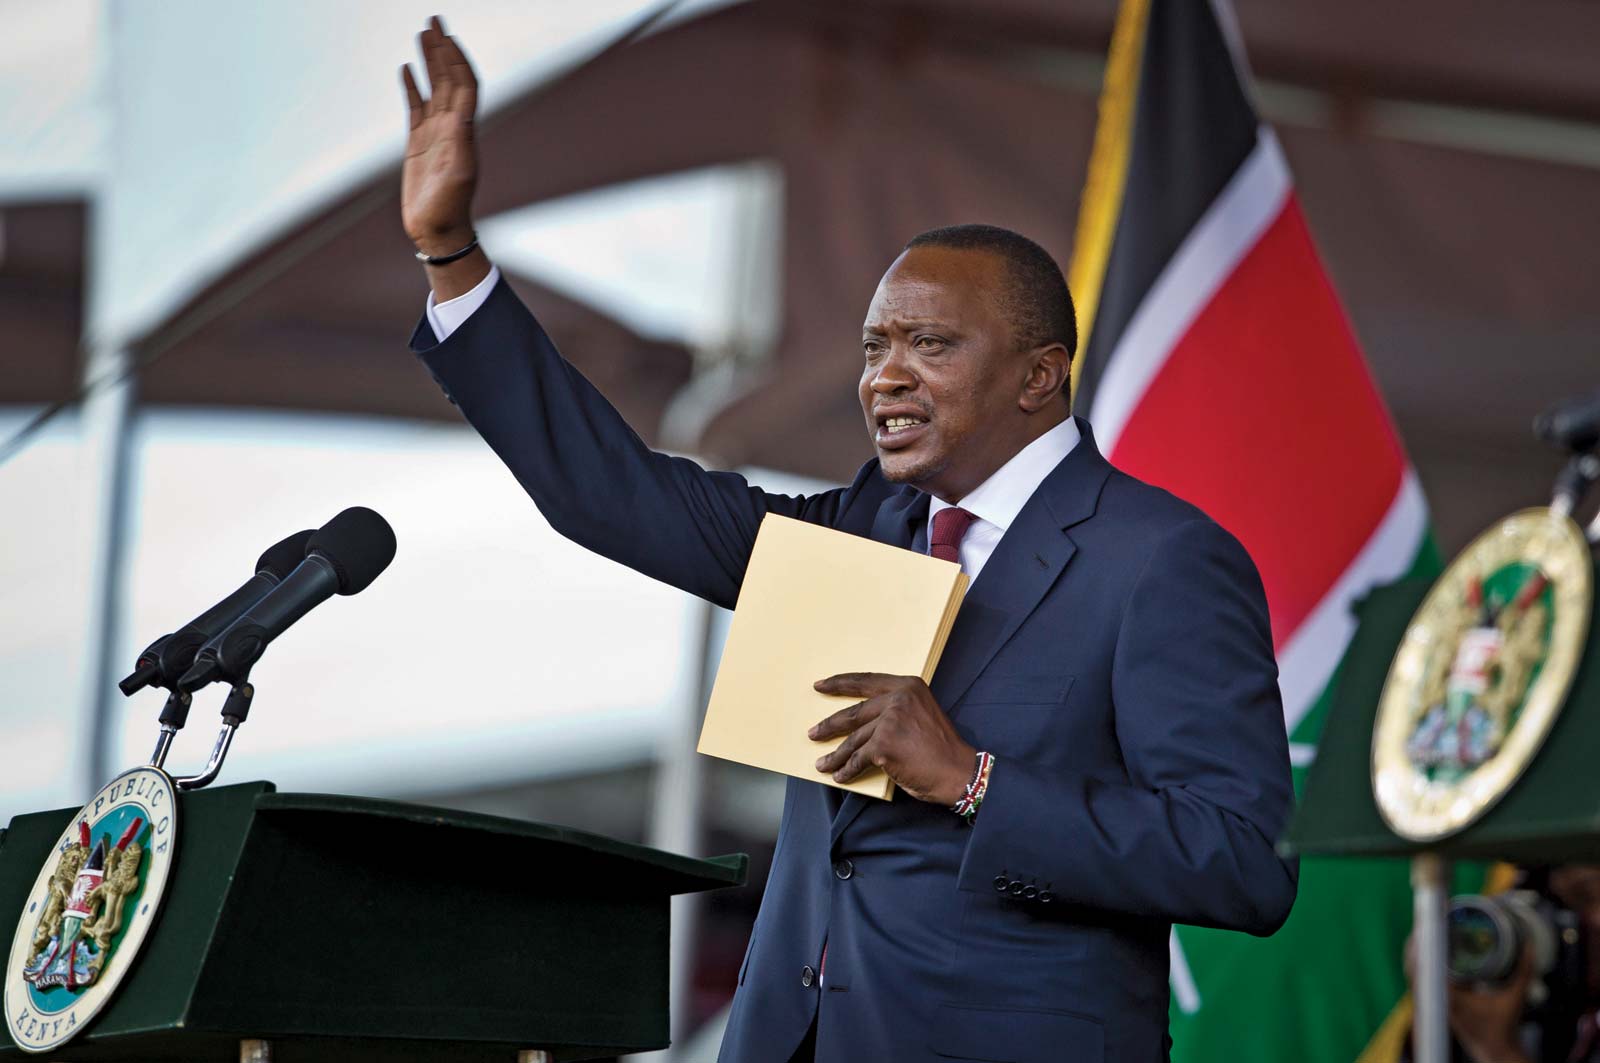 史上最大のデータ流出「パンドラ文書」で、ケニア大統領一家によるオフショア企業の所有発覚